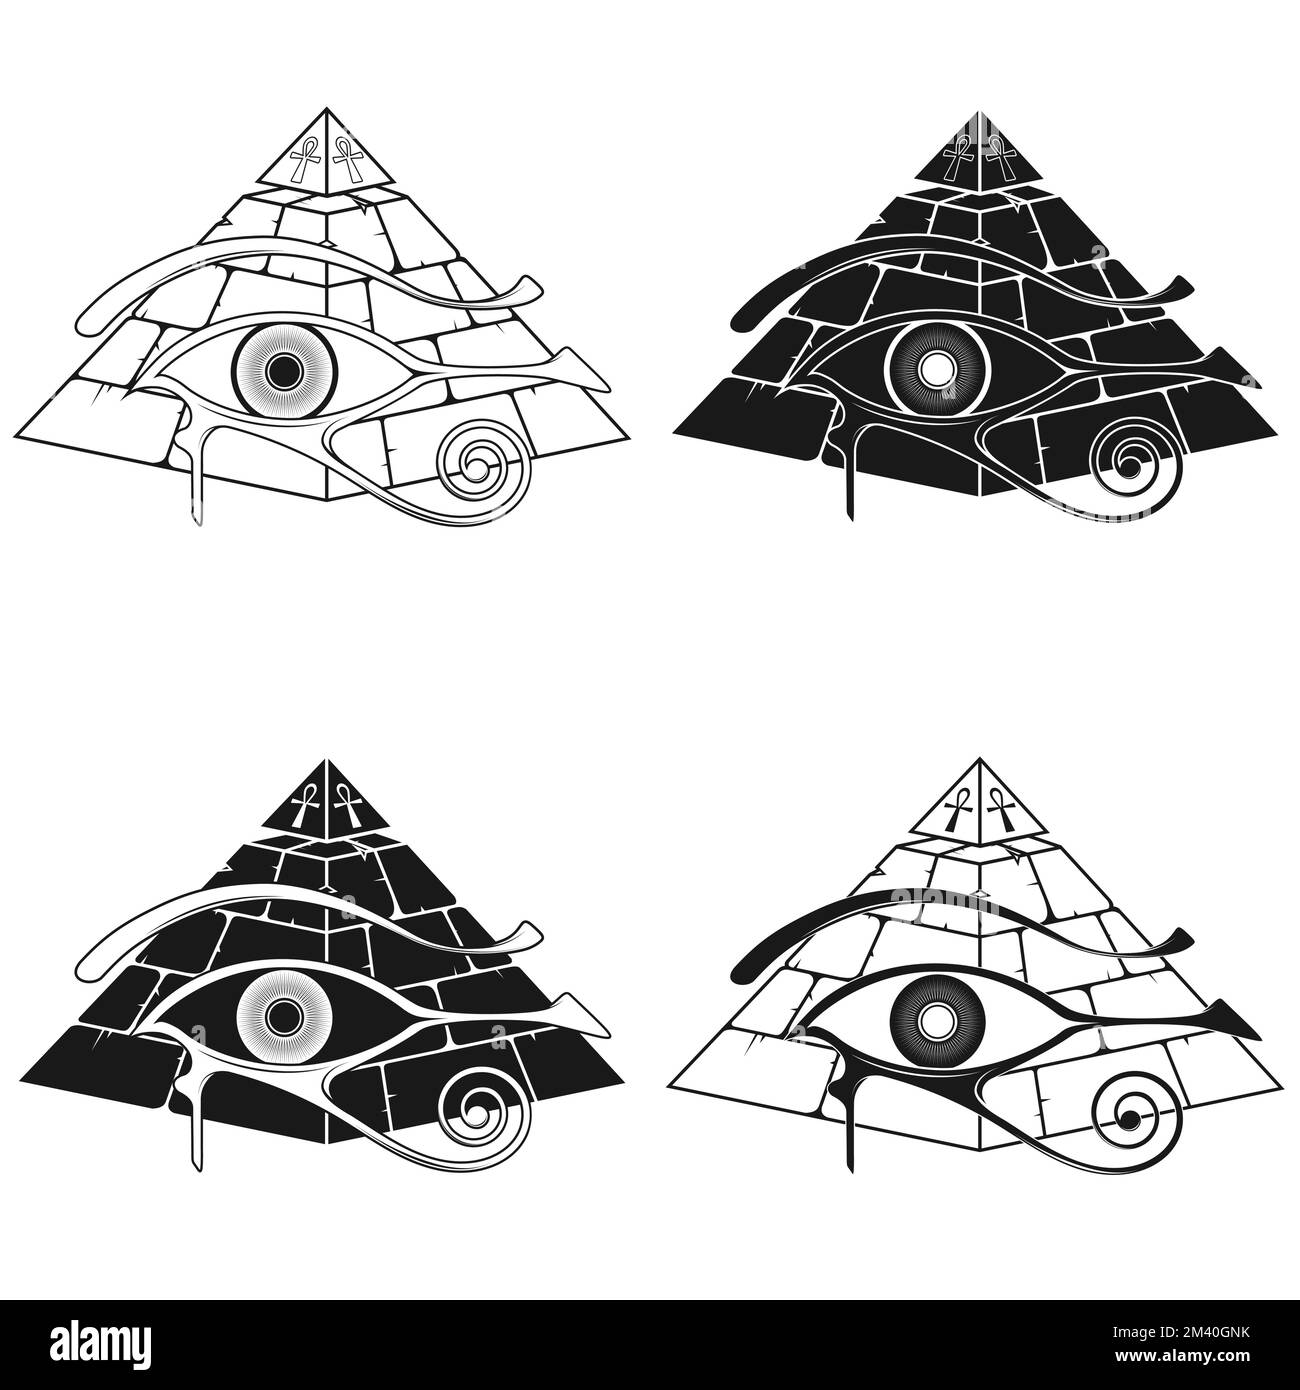 Antico Egitto piramide disegno vettoriale, con l'occhio di horus e croce ricotta, antichi simboli egiziani Illustrazione Vettoriale